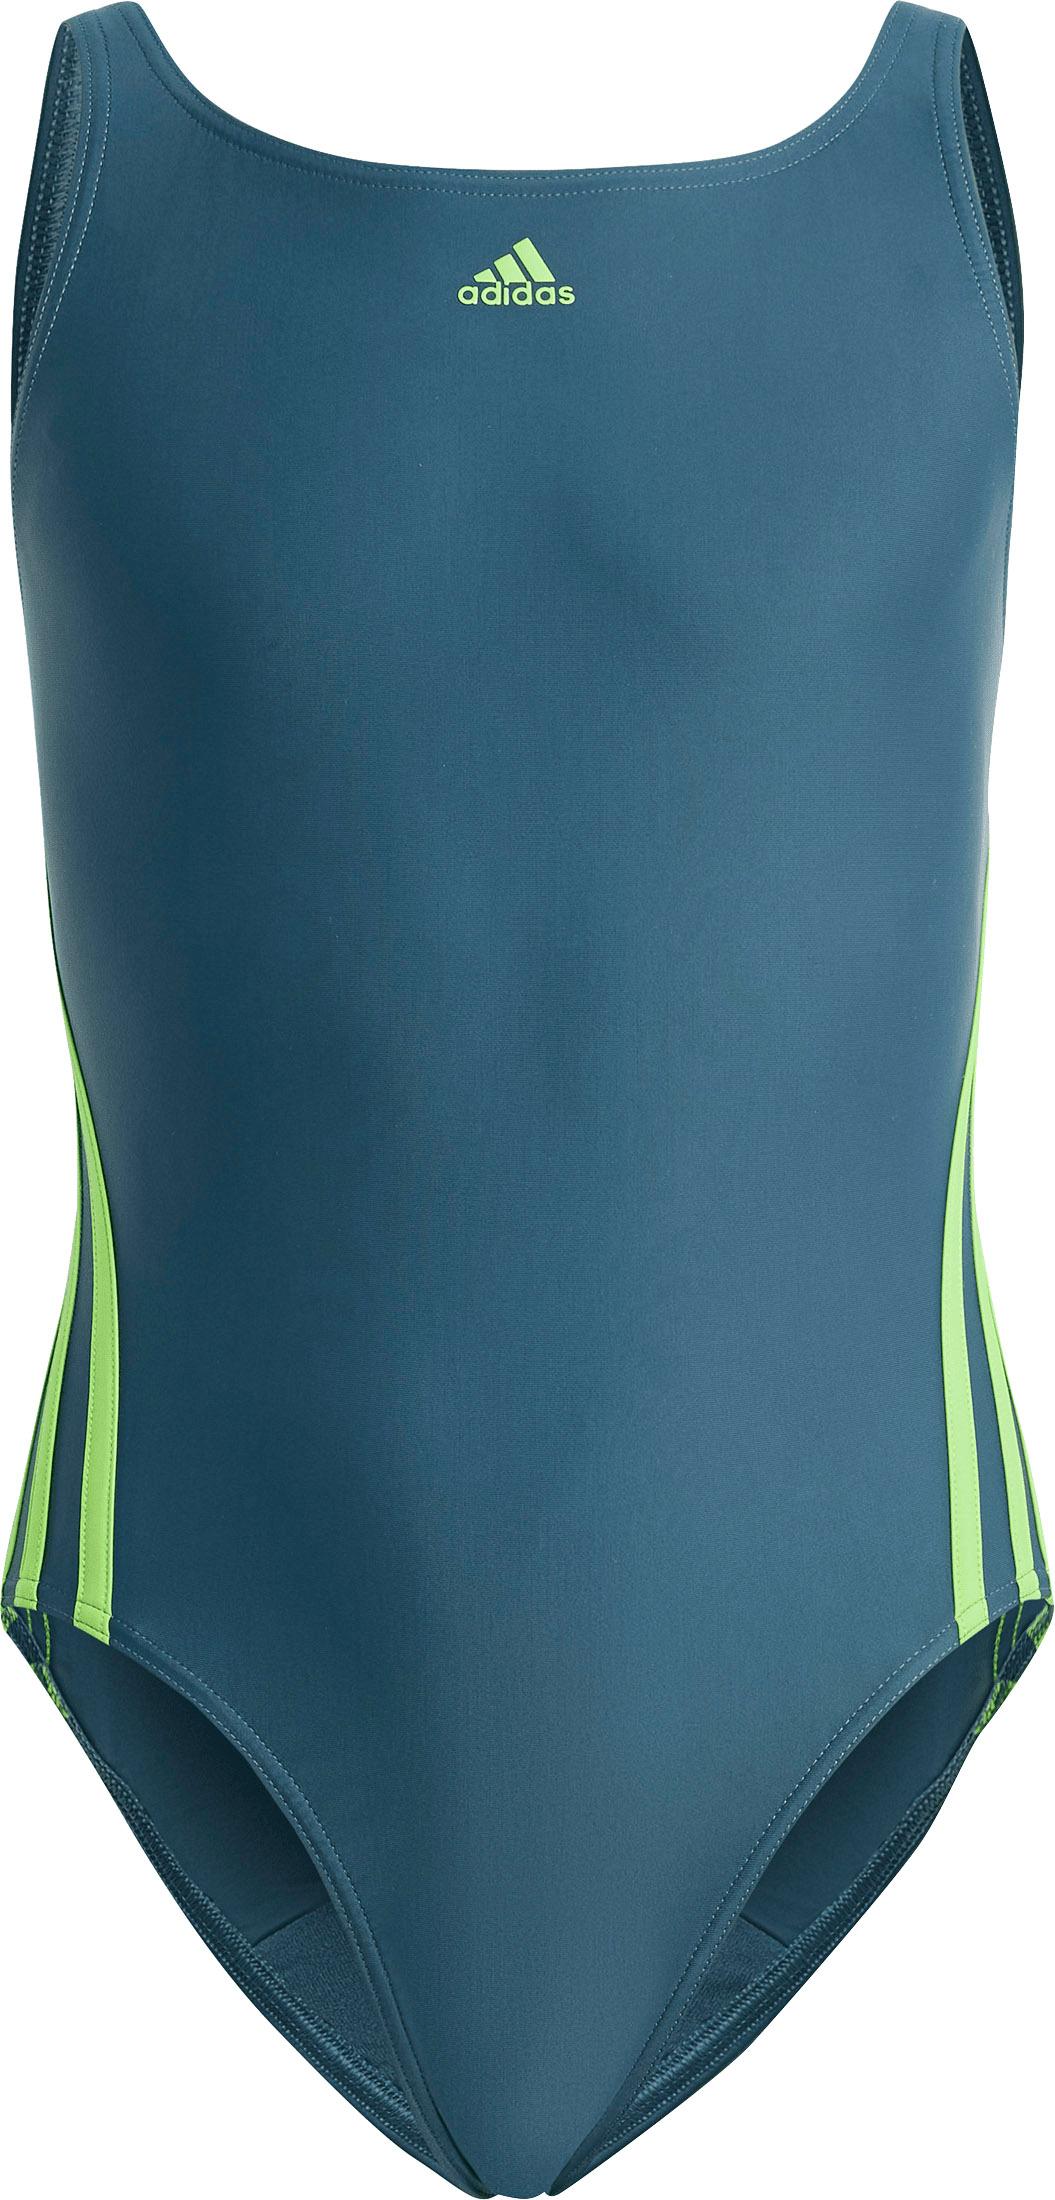 Adidas Badeanzug Mädchen arctic night-lucid lime kaufen von SportScheck im Shop Online